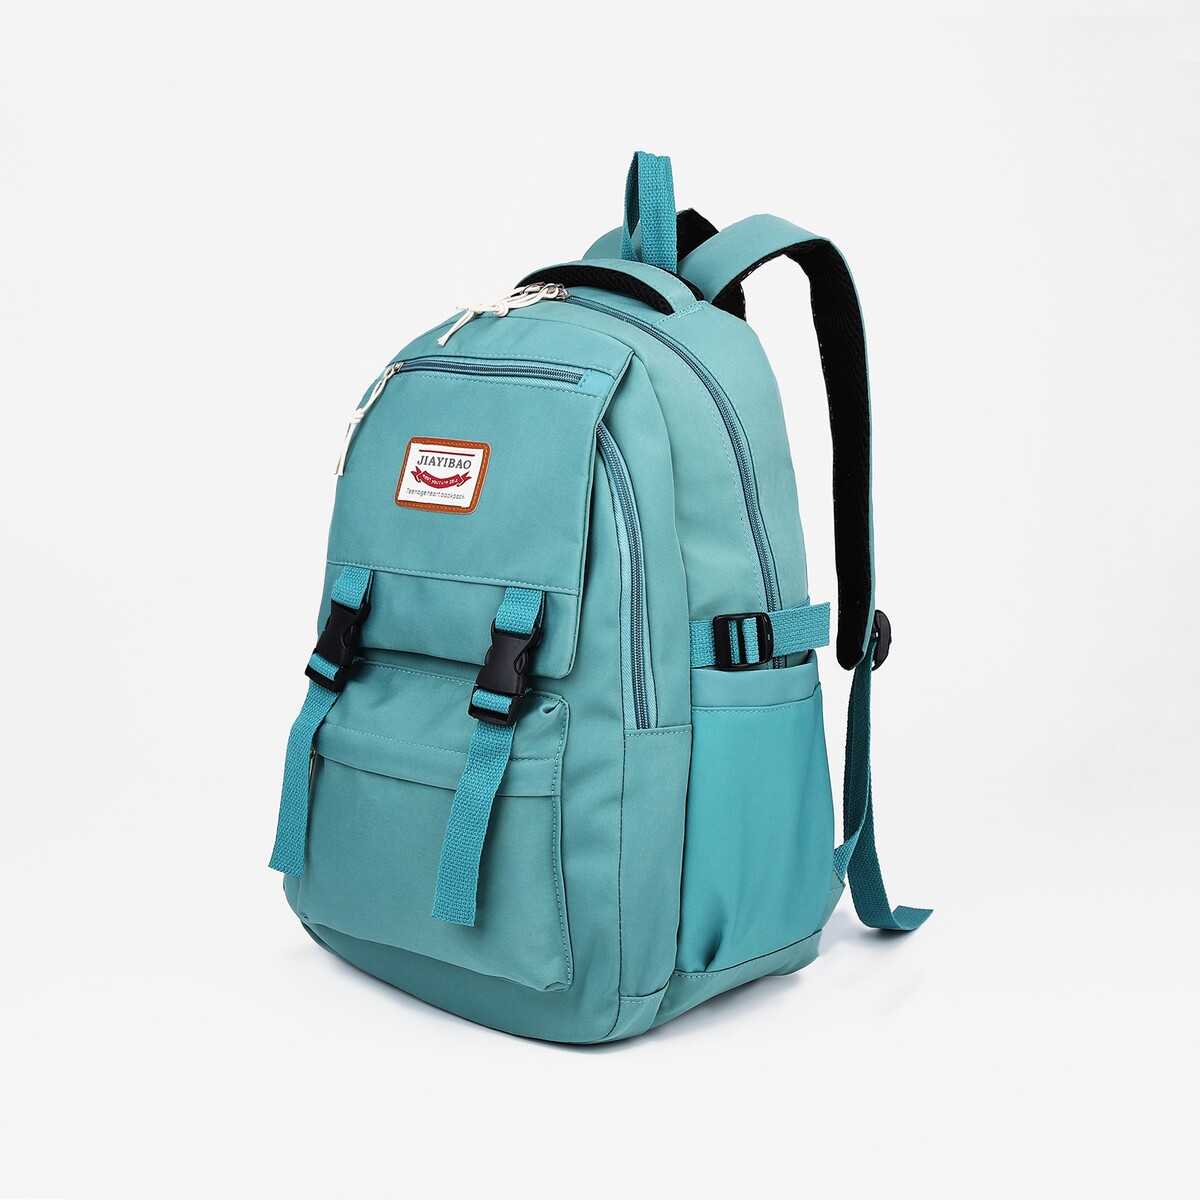 Рюкзак на молнии, 4 наружных кармана, цвет бирюзовый рюкзак школьный из текстиля 3 кармана бирюзовый